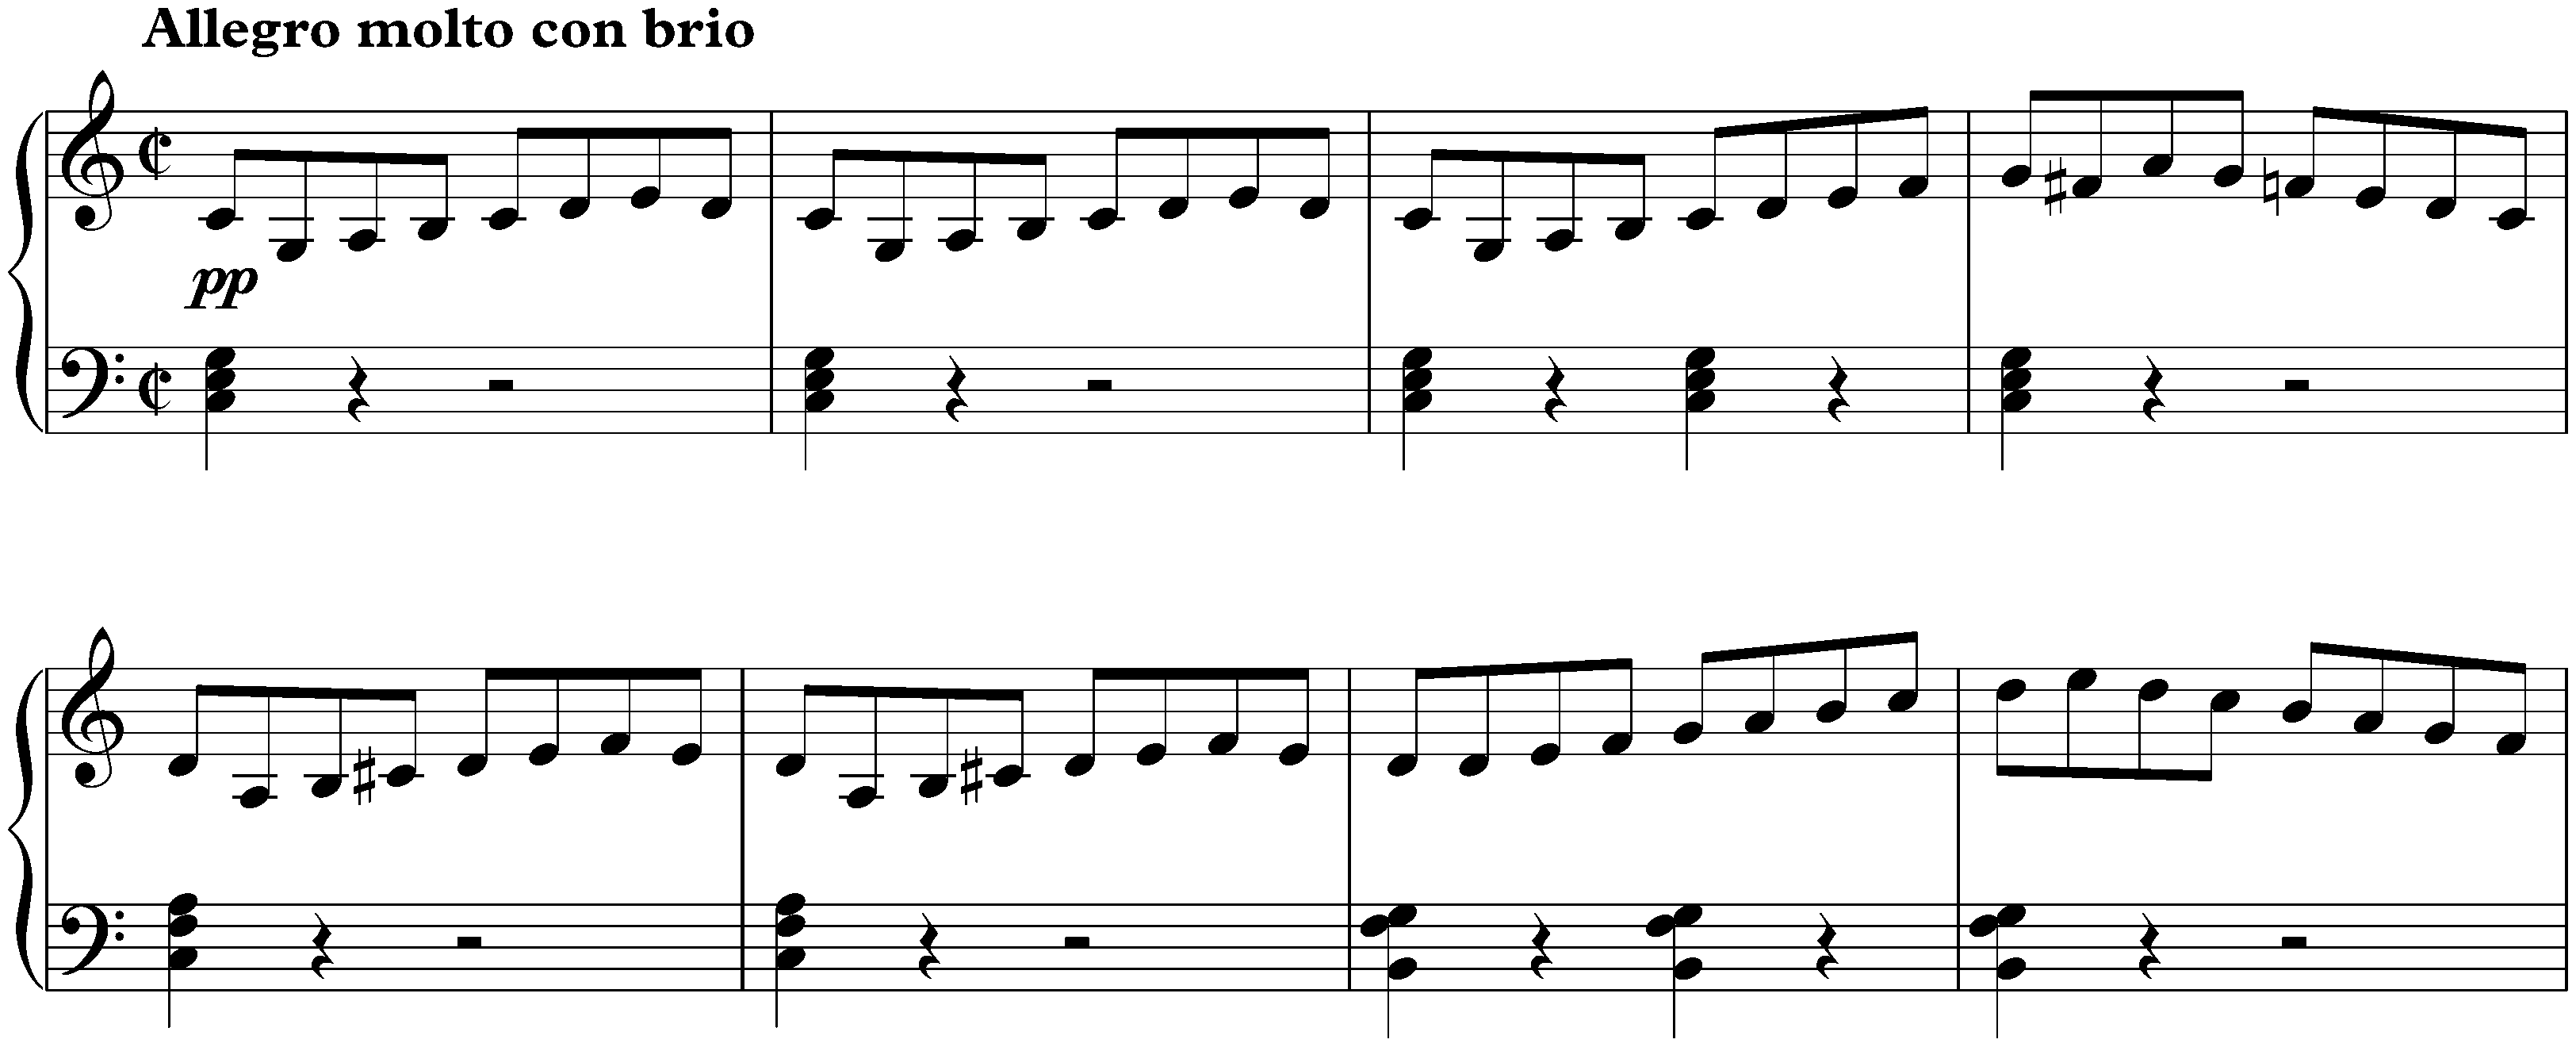 Die Geschöpfe des Prometheus, op. 43; 1. Overtura: Adagio – Allegro molto con brio